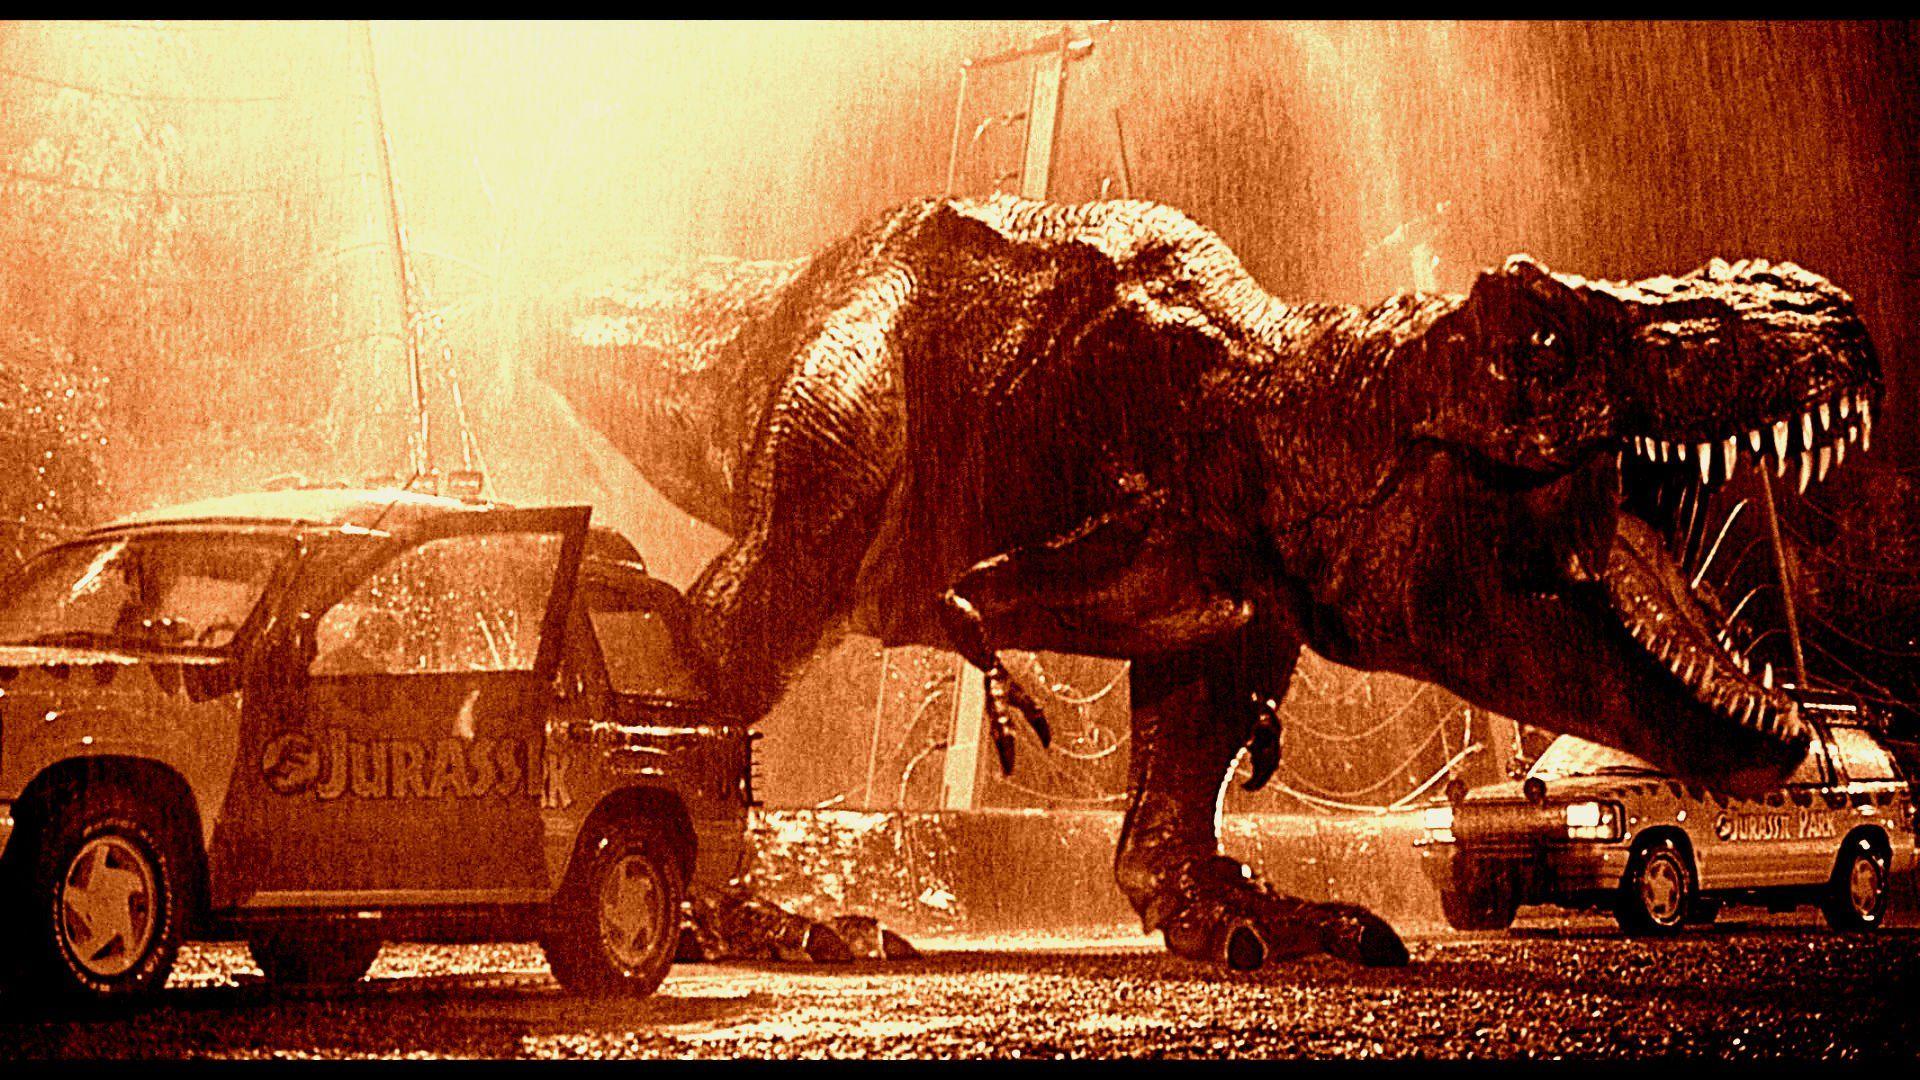 Jurassic Park Wallpaper HD PixelsTalk Jurassic Park Wallpaper